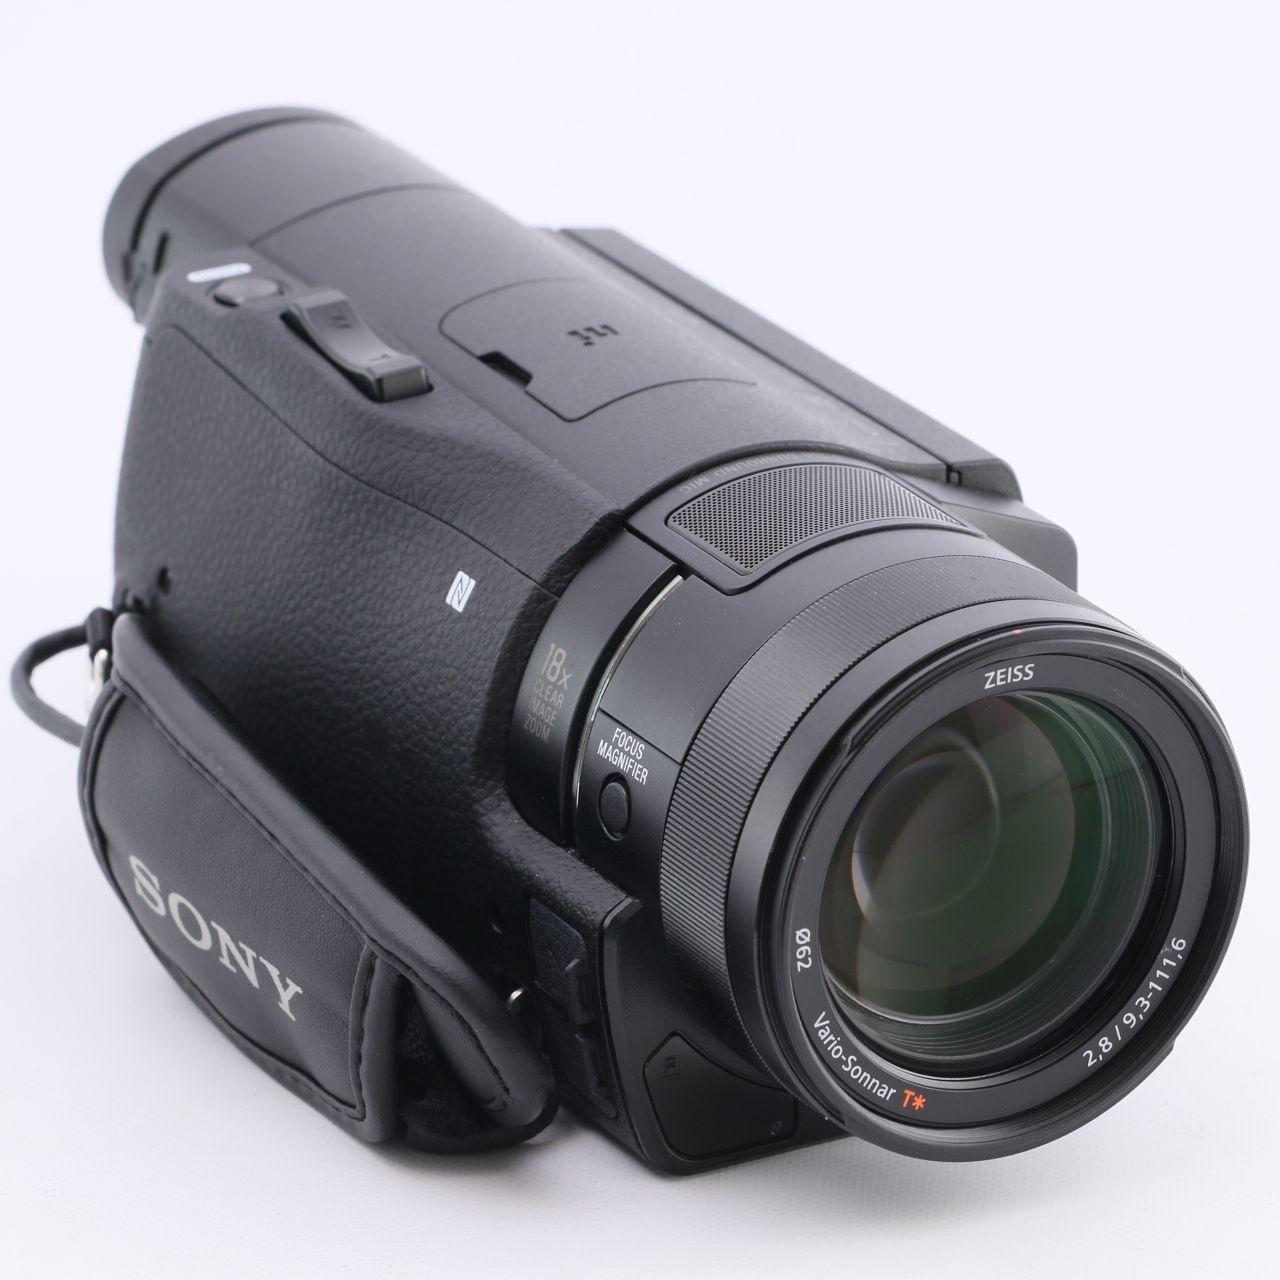 ソニー SONY ビデオカメラ FDR-AX100 4K 光学12倍 ブラック Handycam FDR-AX100 BC - 5